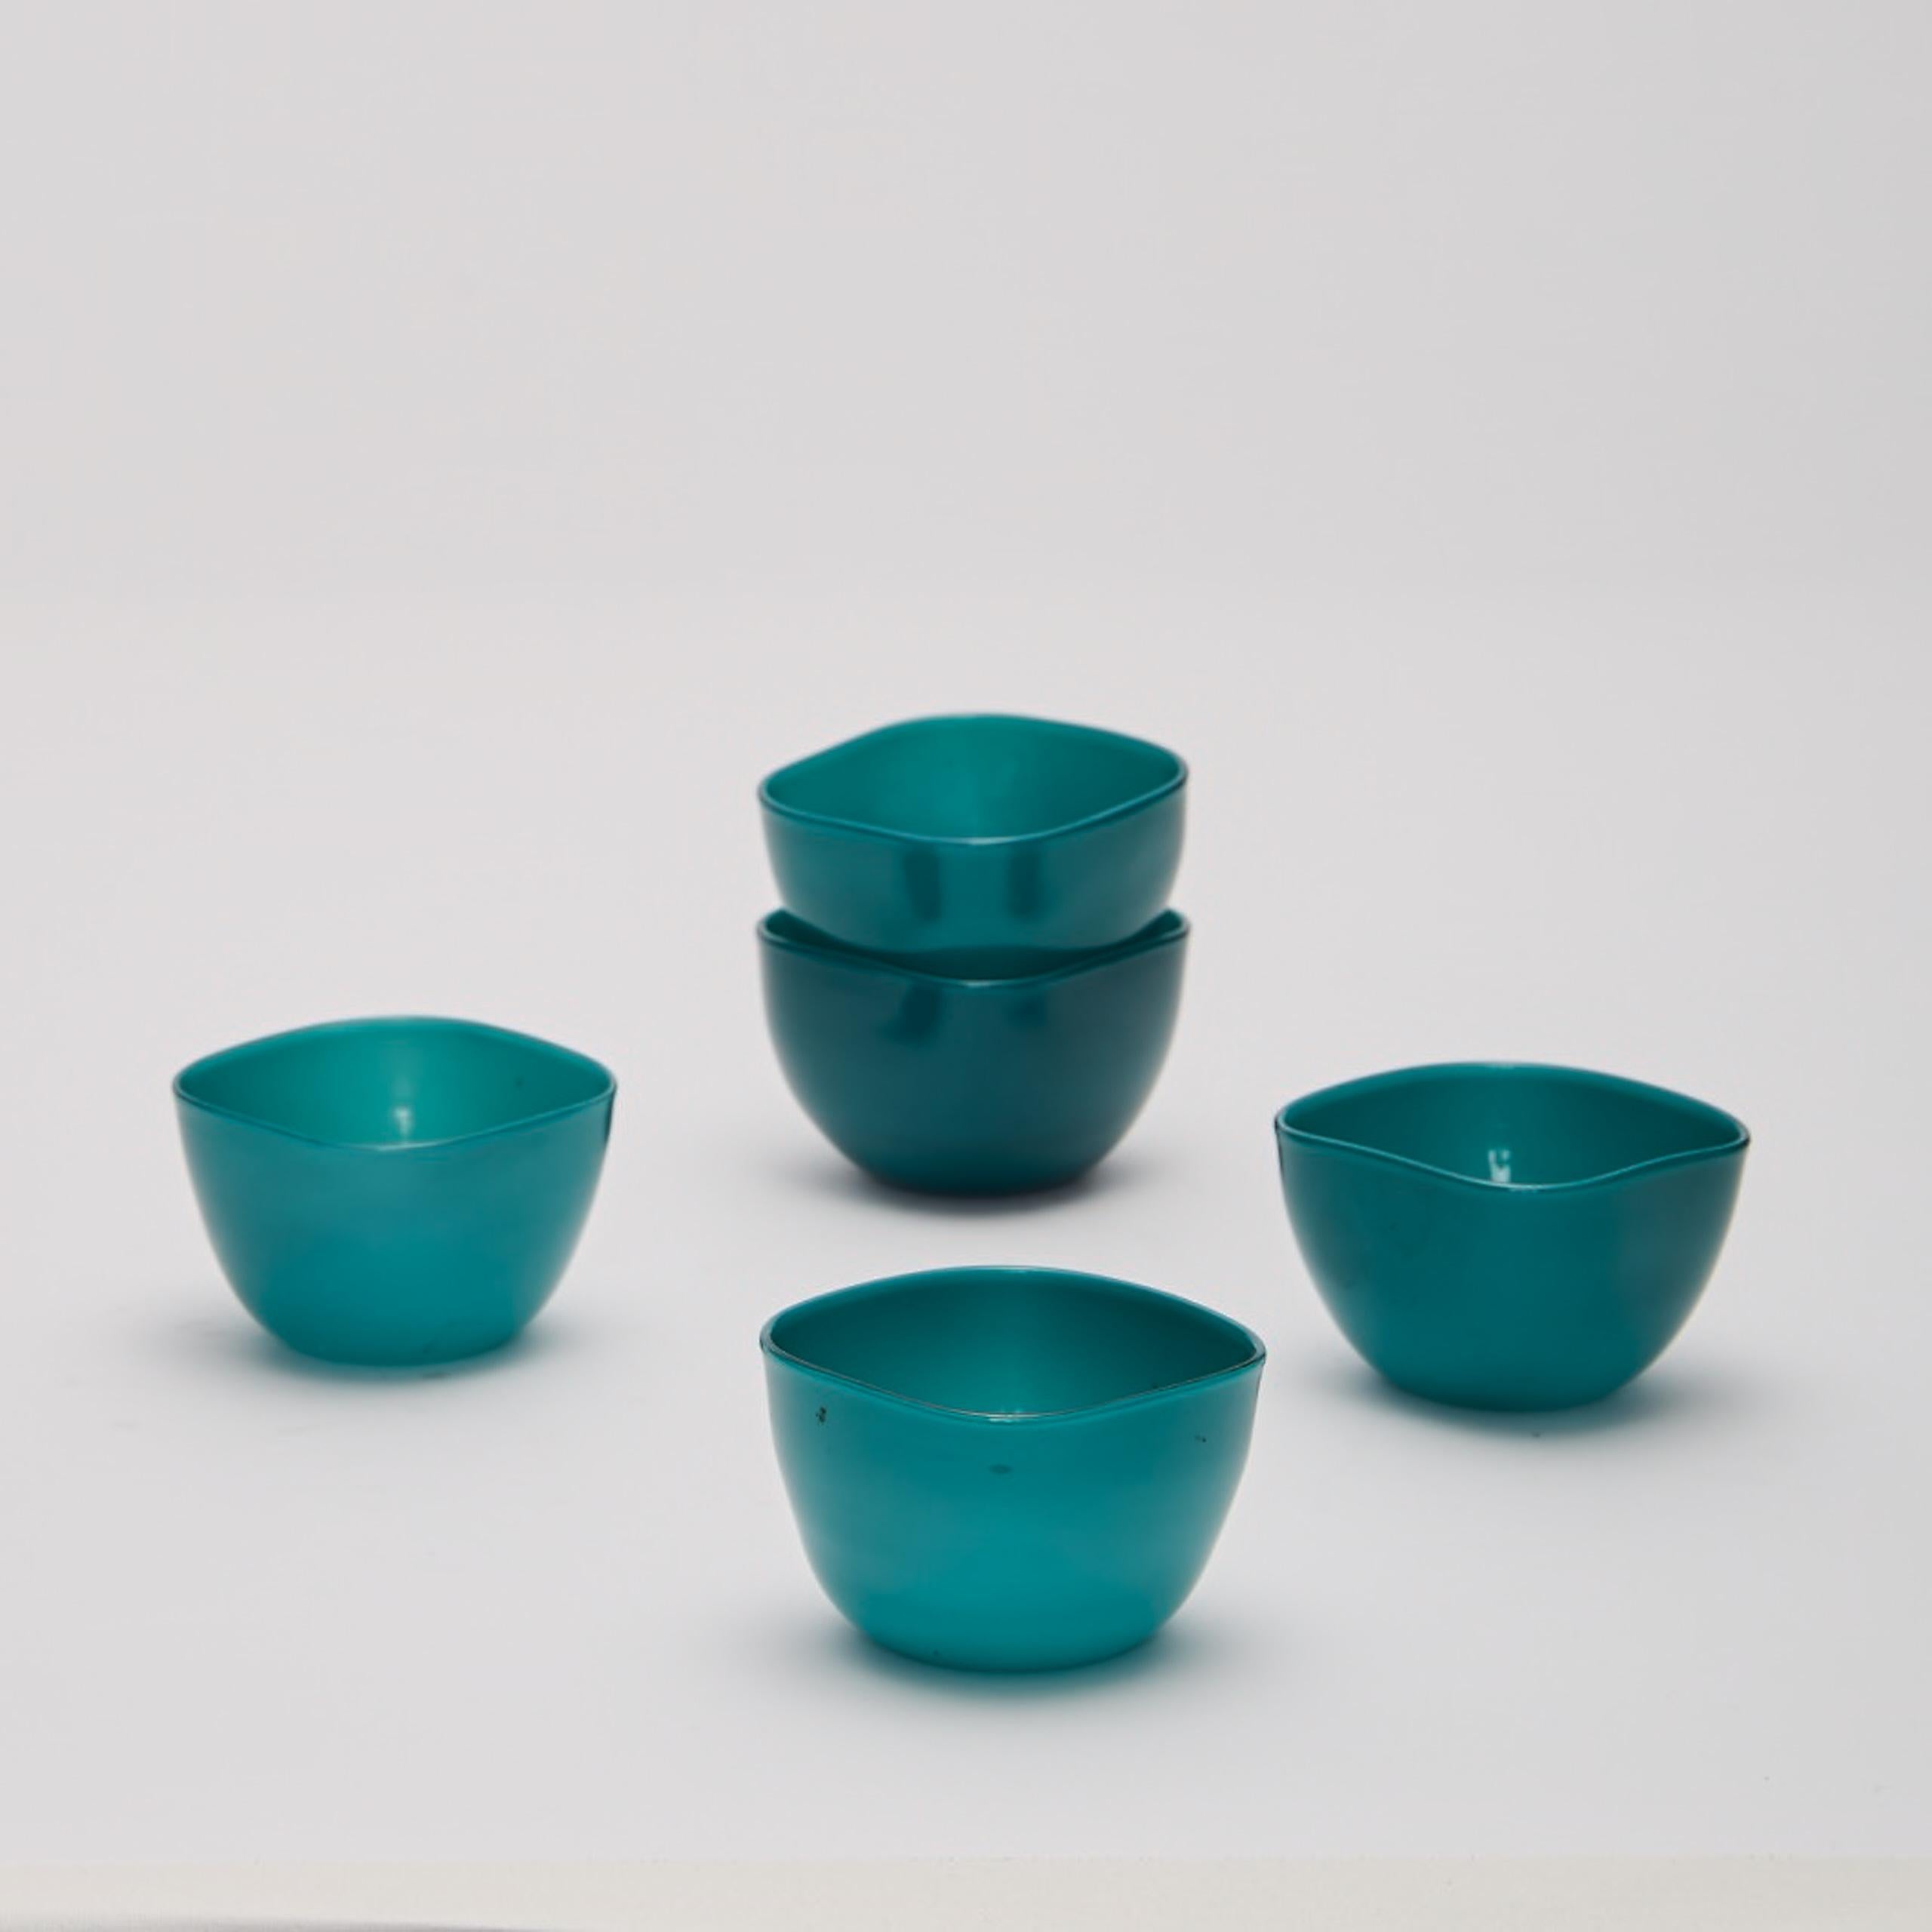 Cinq petits bols en opaline turquoise soufflés à la main par Paolo Venini (1895-1959) vers 1950 pour Murano, verre opaque, cachet à l'acide sur chacun d'eux 